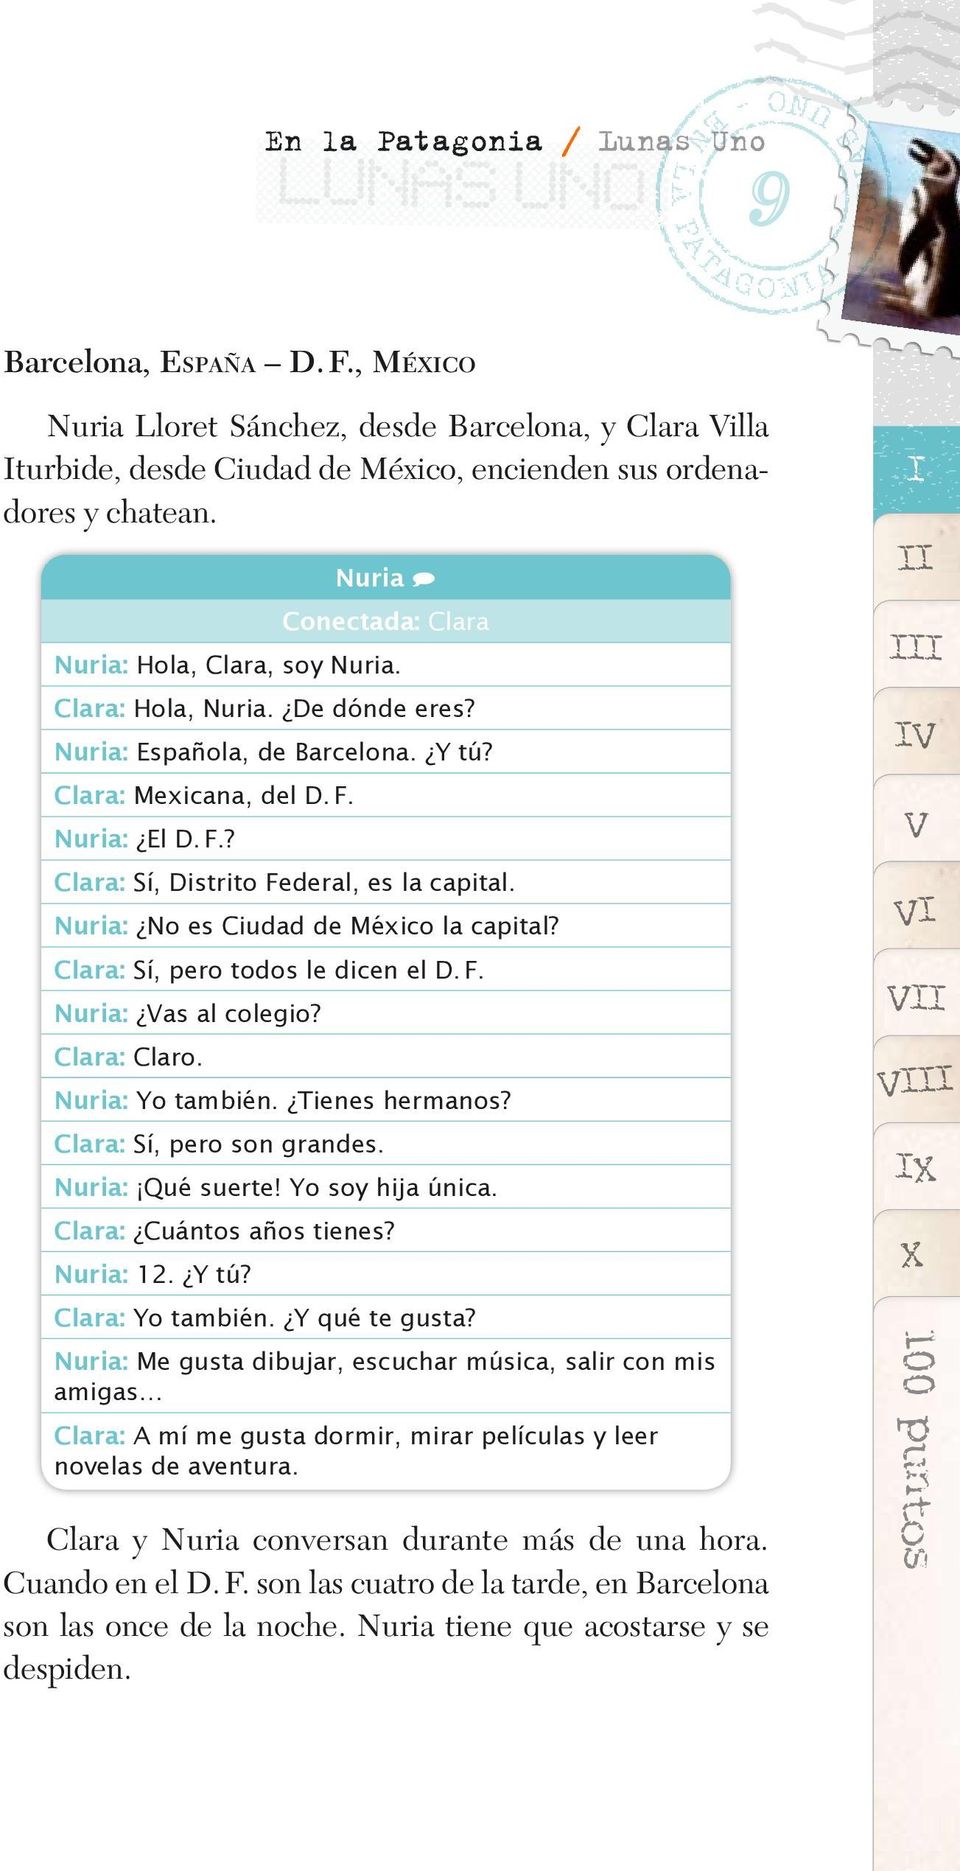 Nuria: No es Ciudad de México la capital? Clara: Sí, pero todos le dicen el D. F. Nuria: Vas al colegio? Clara: Claro. Nuria: Yo también. Tienes hermanos? Clara: Sí, pero son grandes.